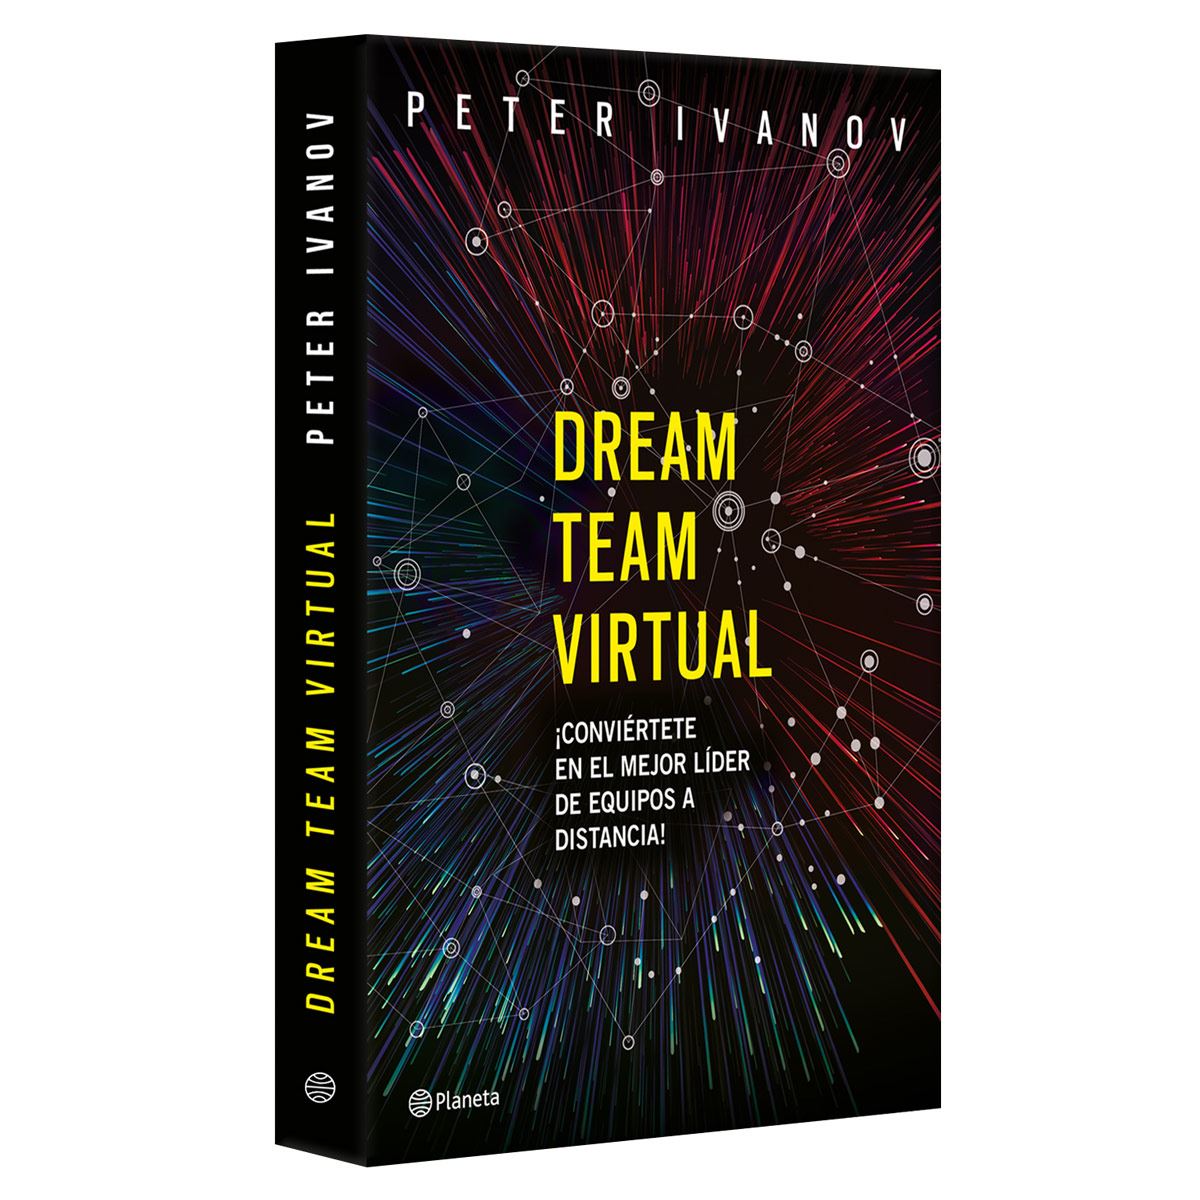 Dream team virtual